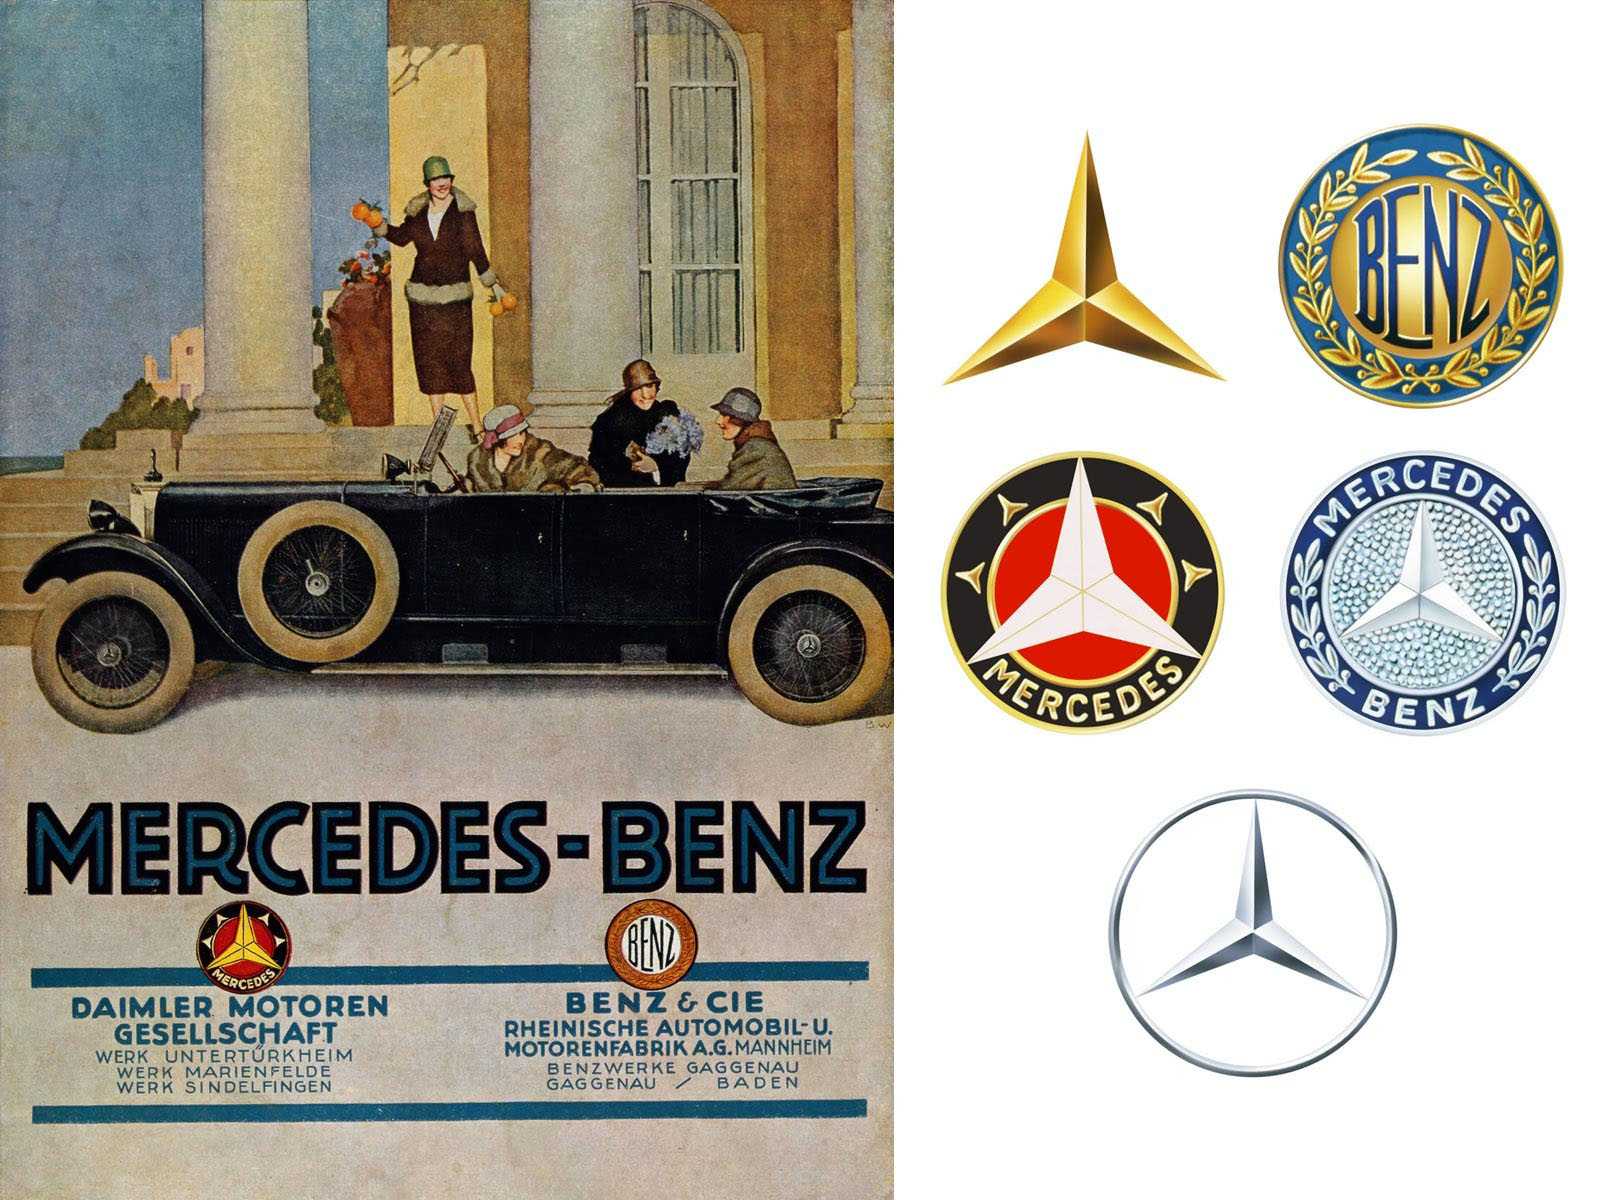 Daimler-Motoren-Gesellschat-Benz-2